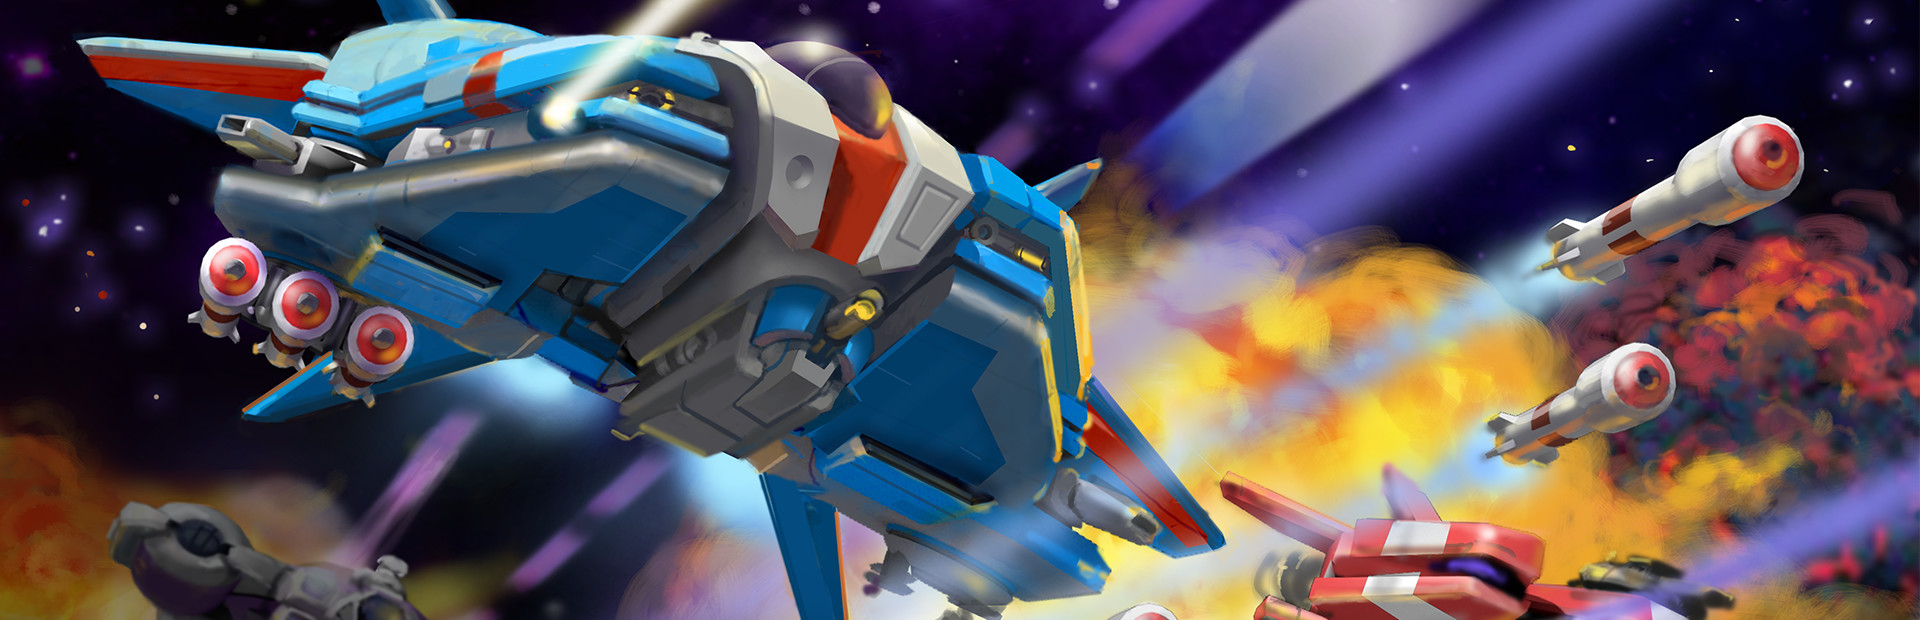 Super Galaxy Squadron EX Turbo cover image